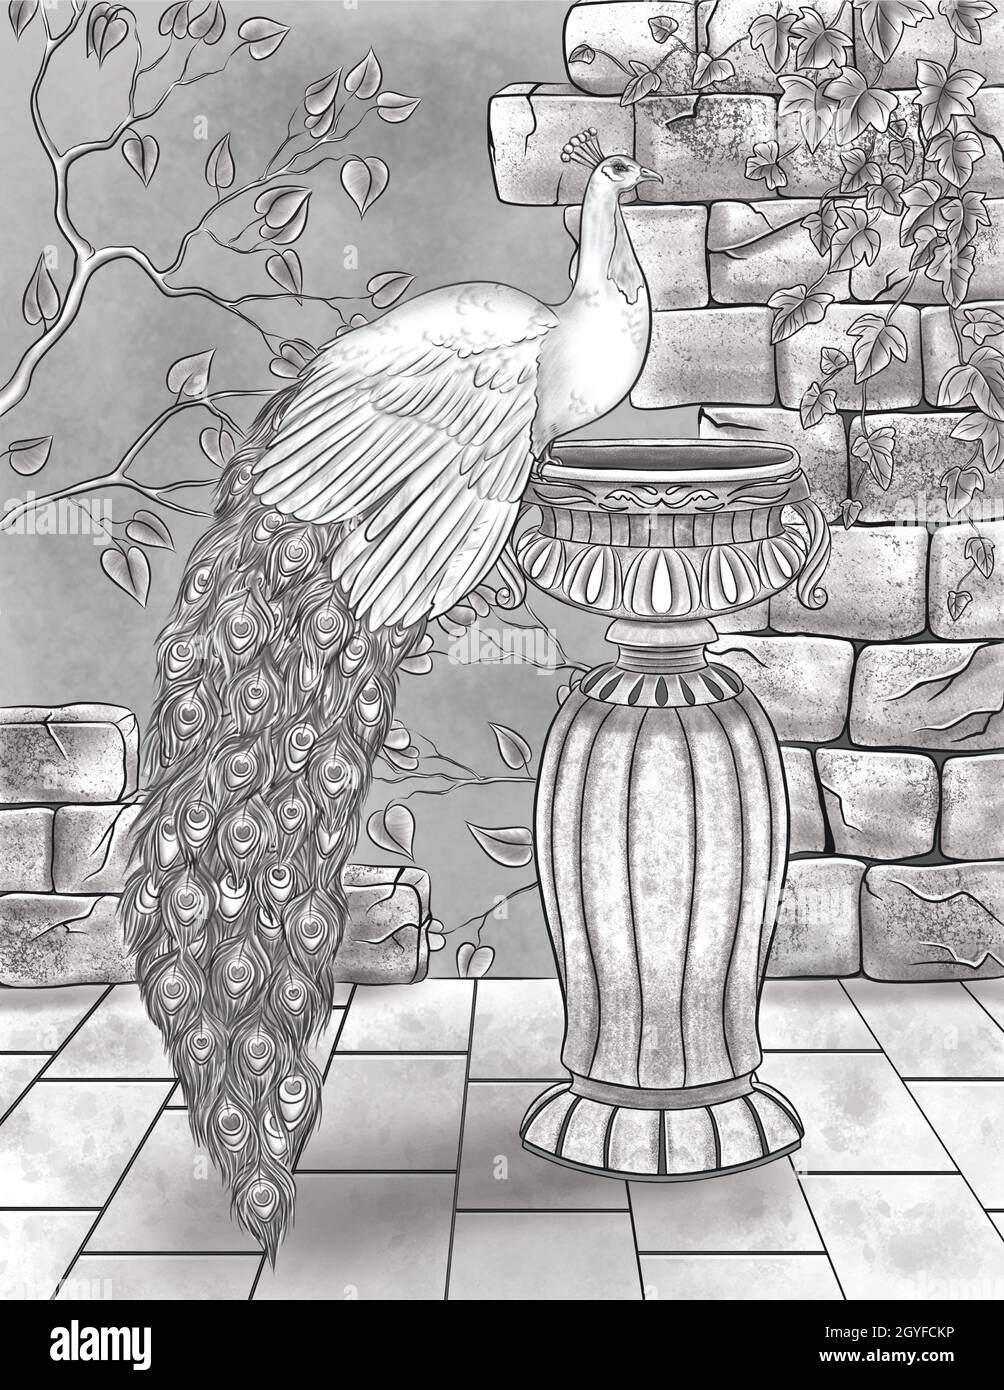 Schöne Pfau Ruht Auf Wasser Vase Mit Gebrochenen Wänden Und Reben. Stockfoto